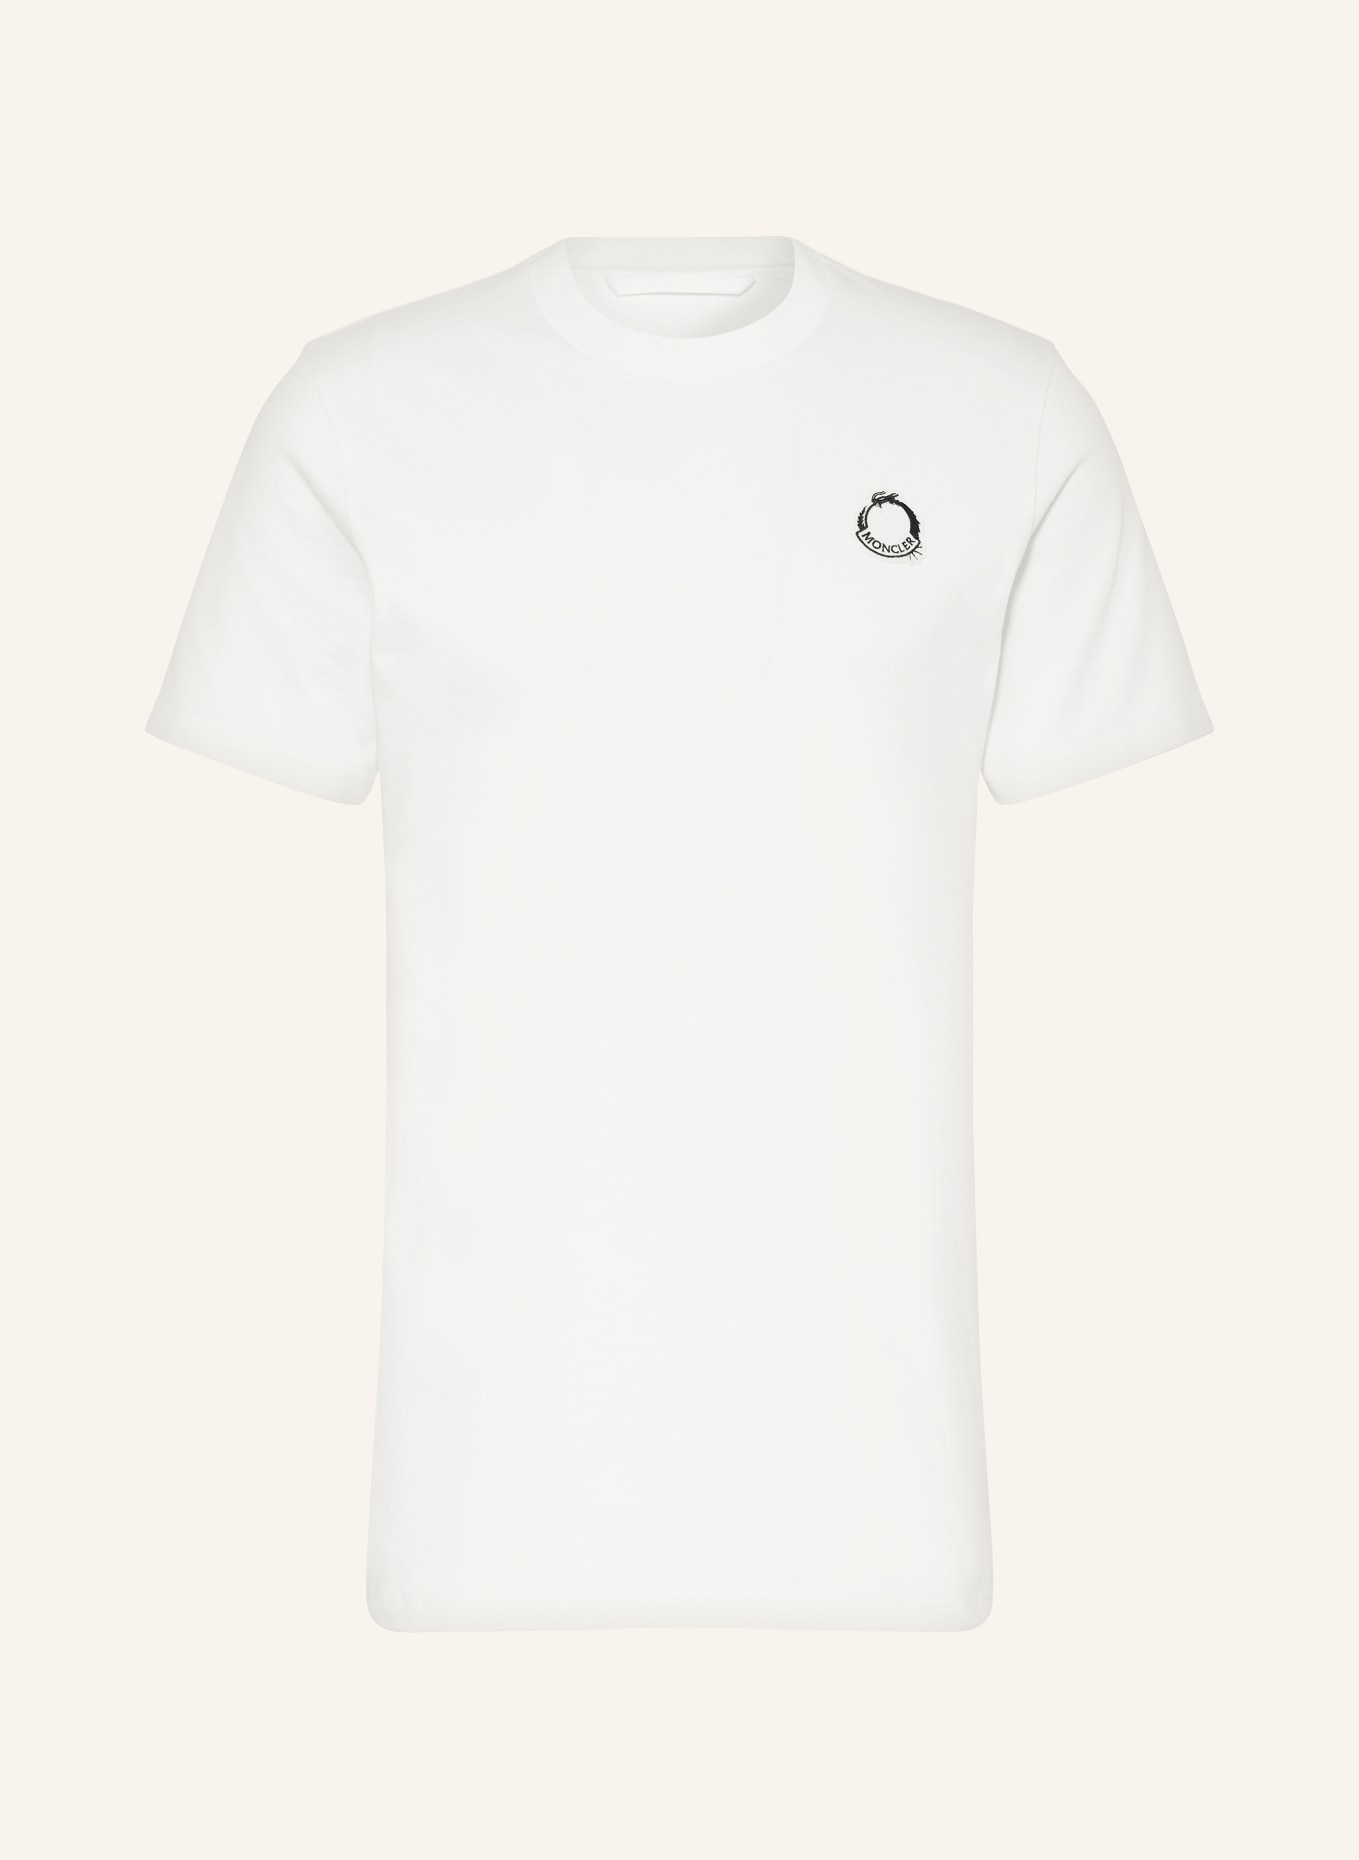 MONCLER T-shirt DRAGON, Color: ECRU (Image 1)